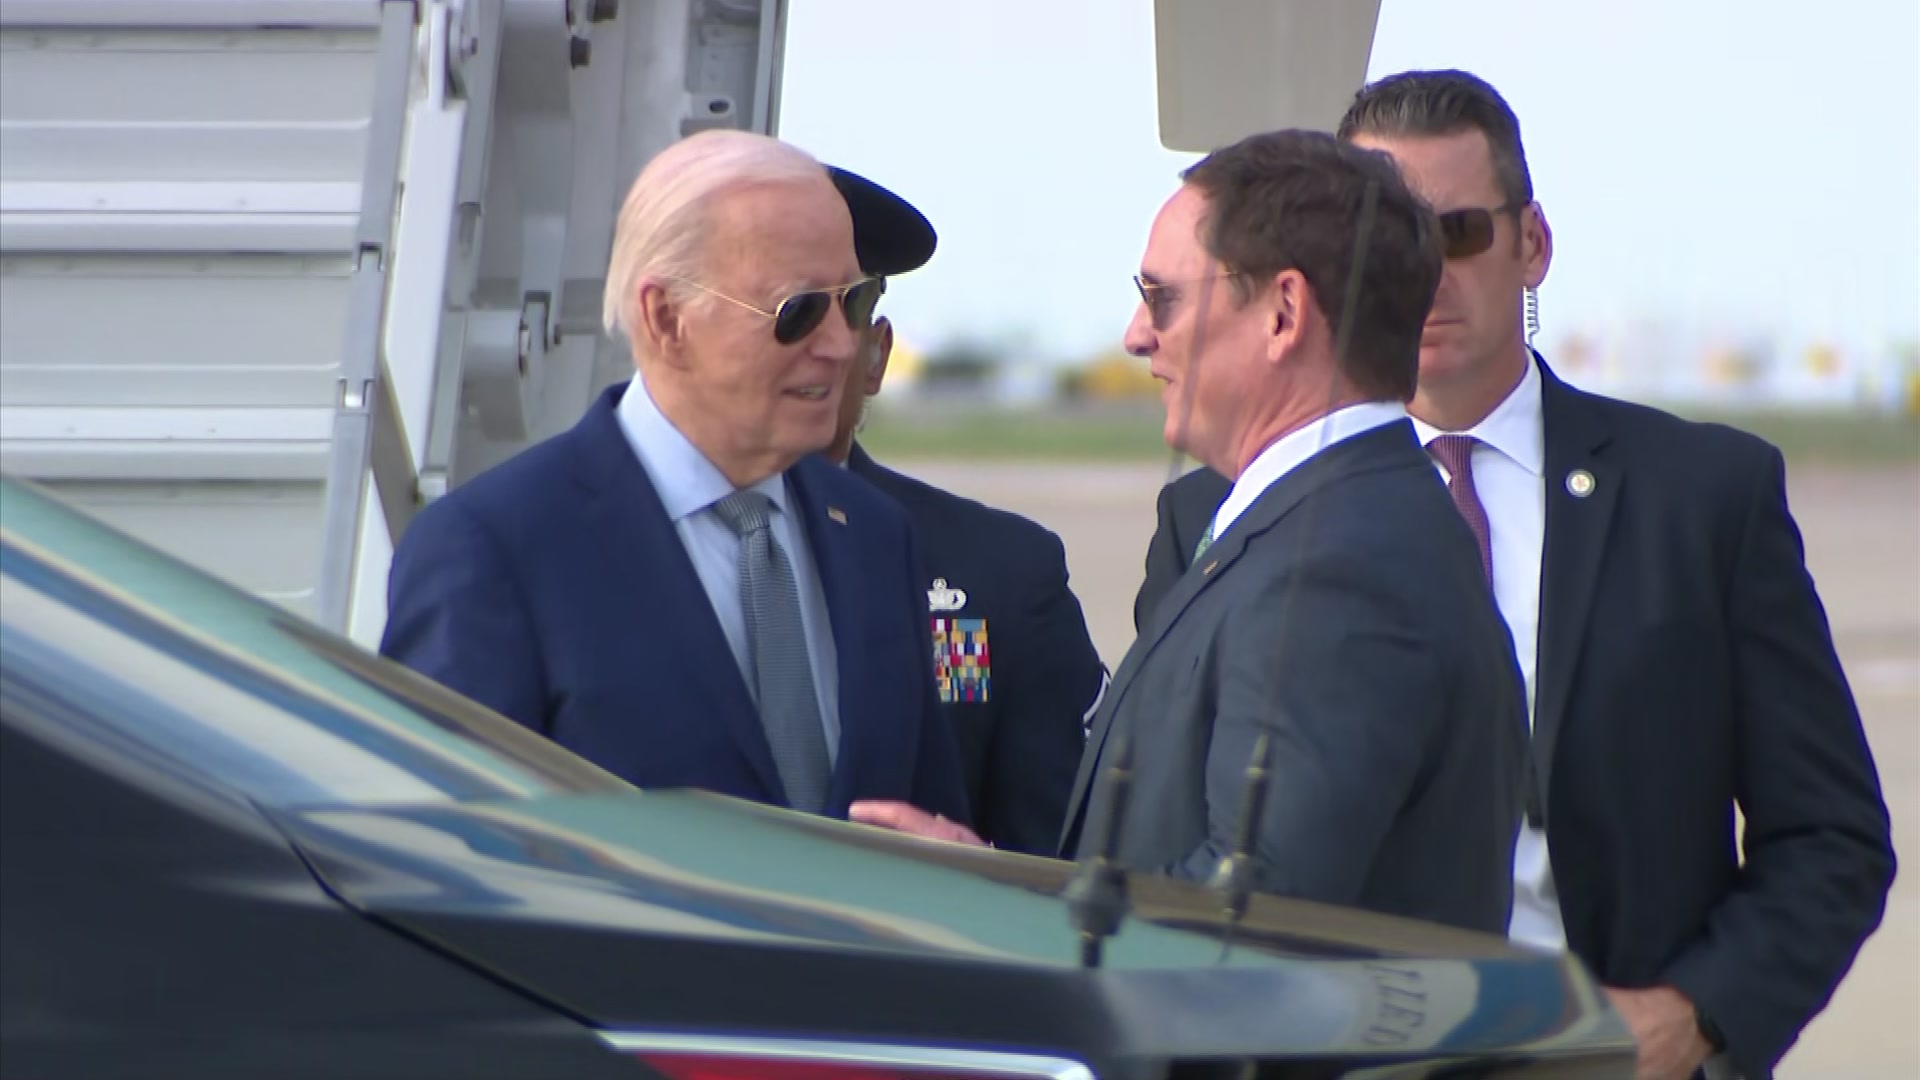 El presidente Biden viaja a Texas para eventos privados de recaudación de fondos – NBC 5 Dallas-Fort Worth